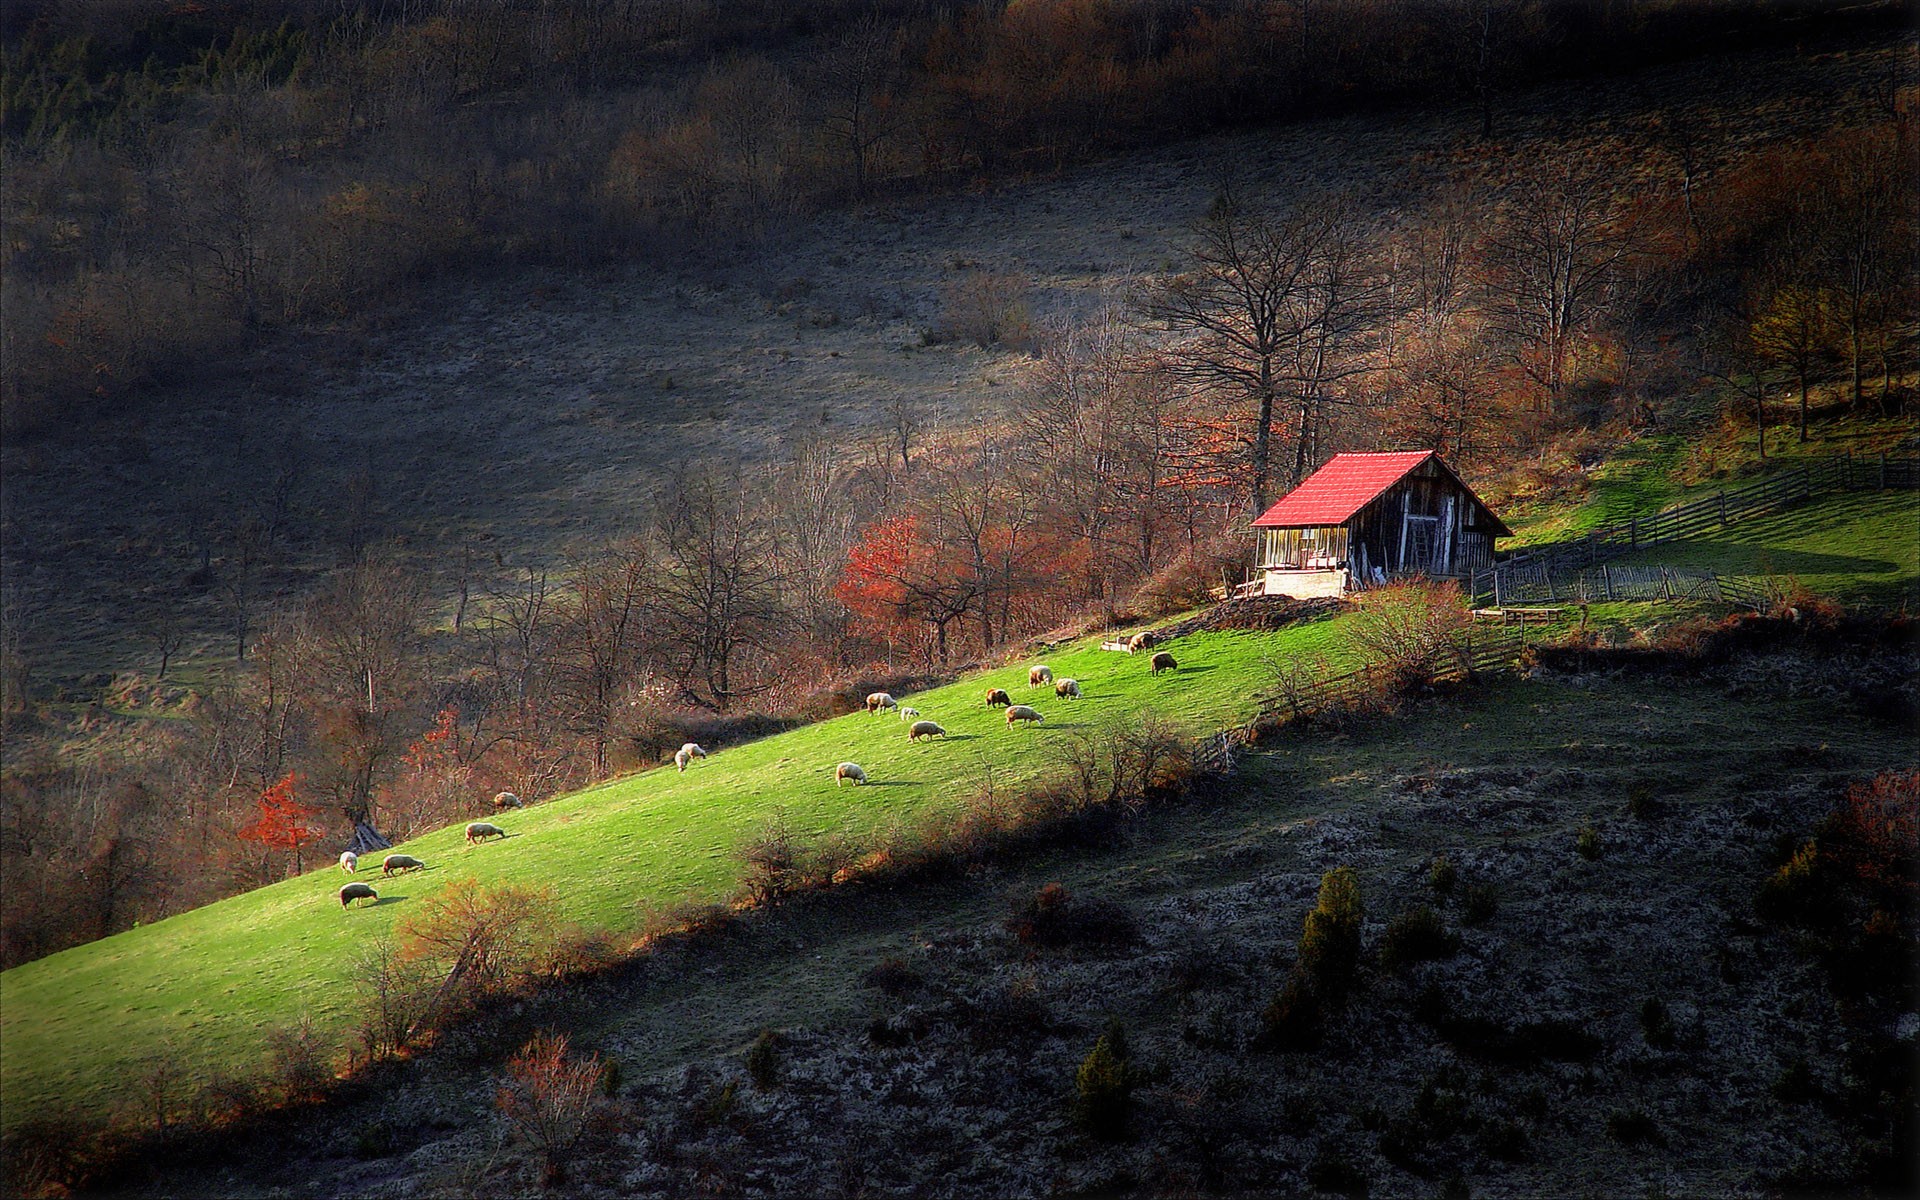 Wallpaper Landscapes - Serbia Landscapes Wallpaper Hd , HD Wallpaper & Backgrounds